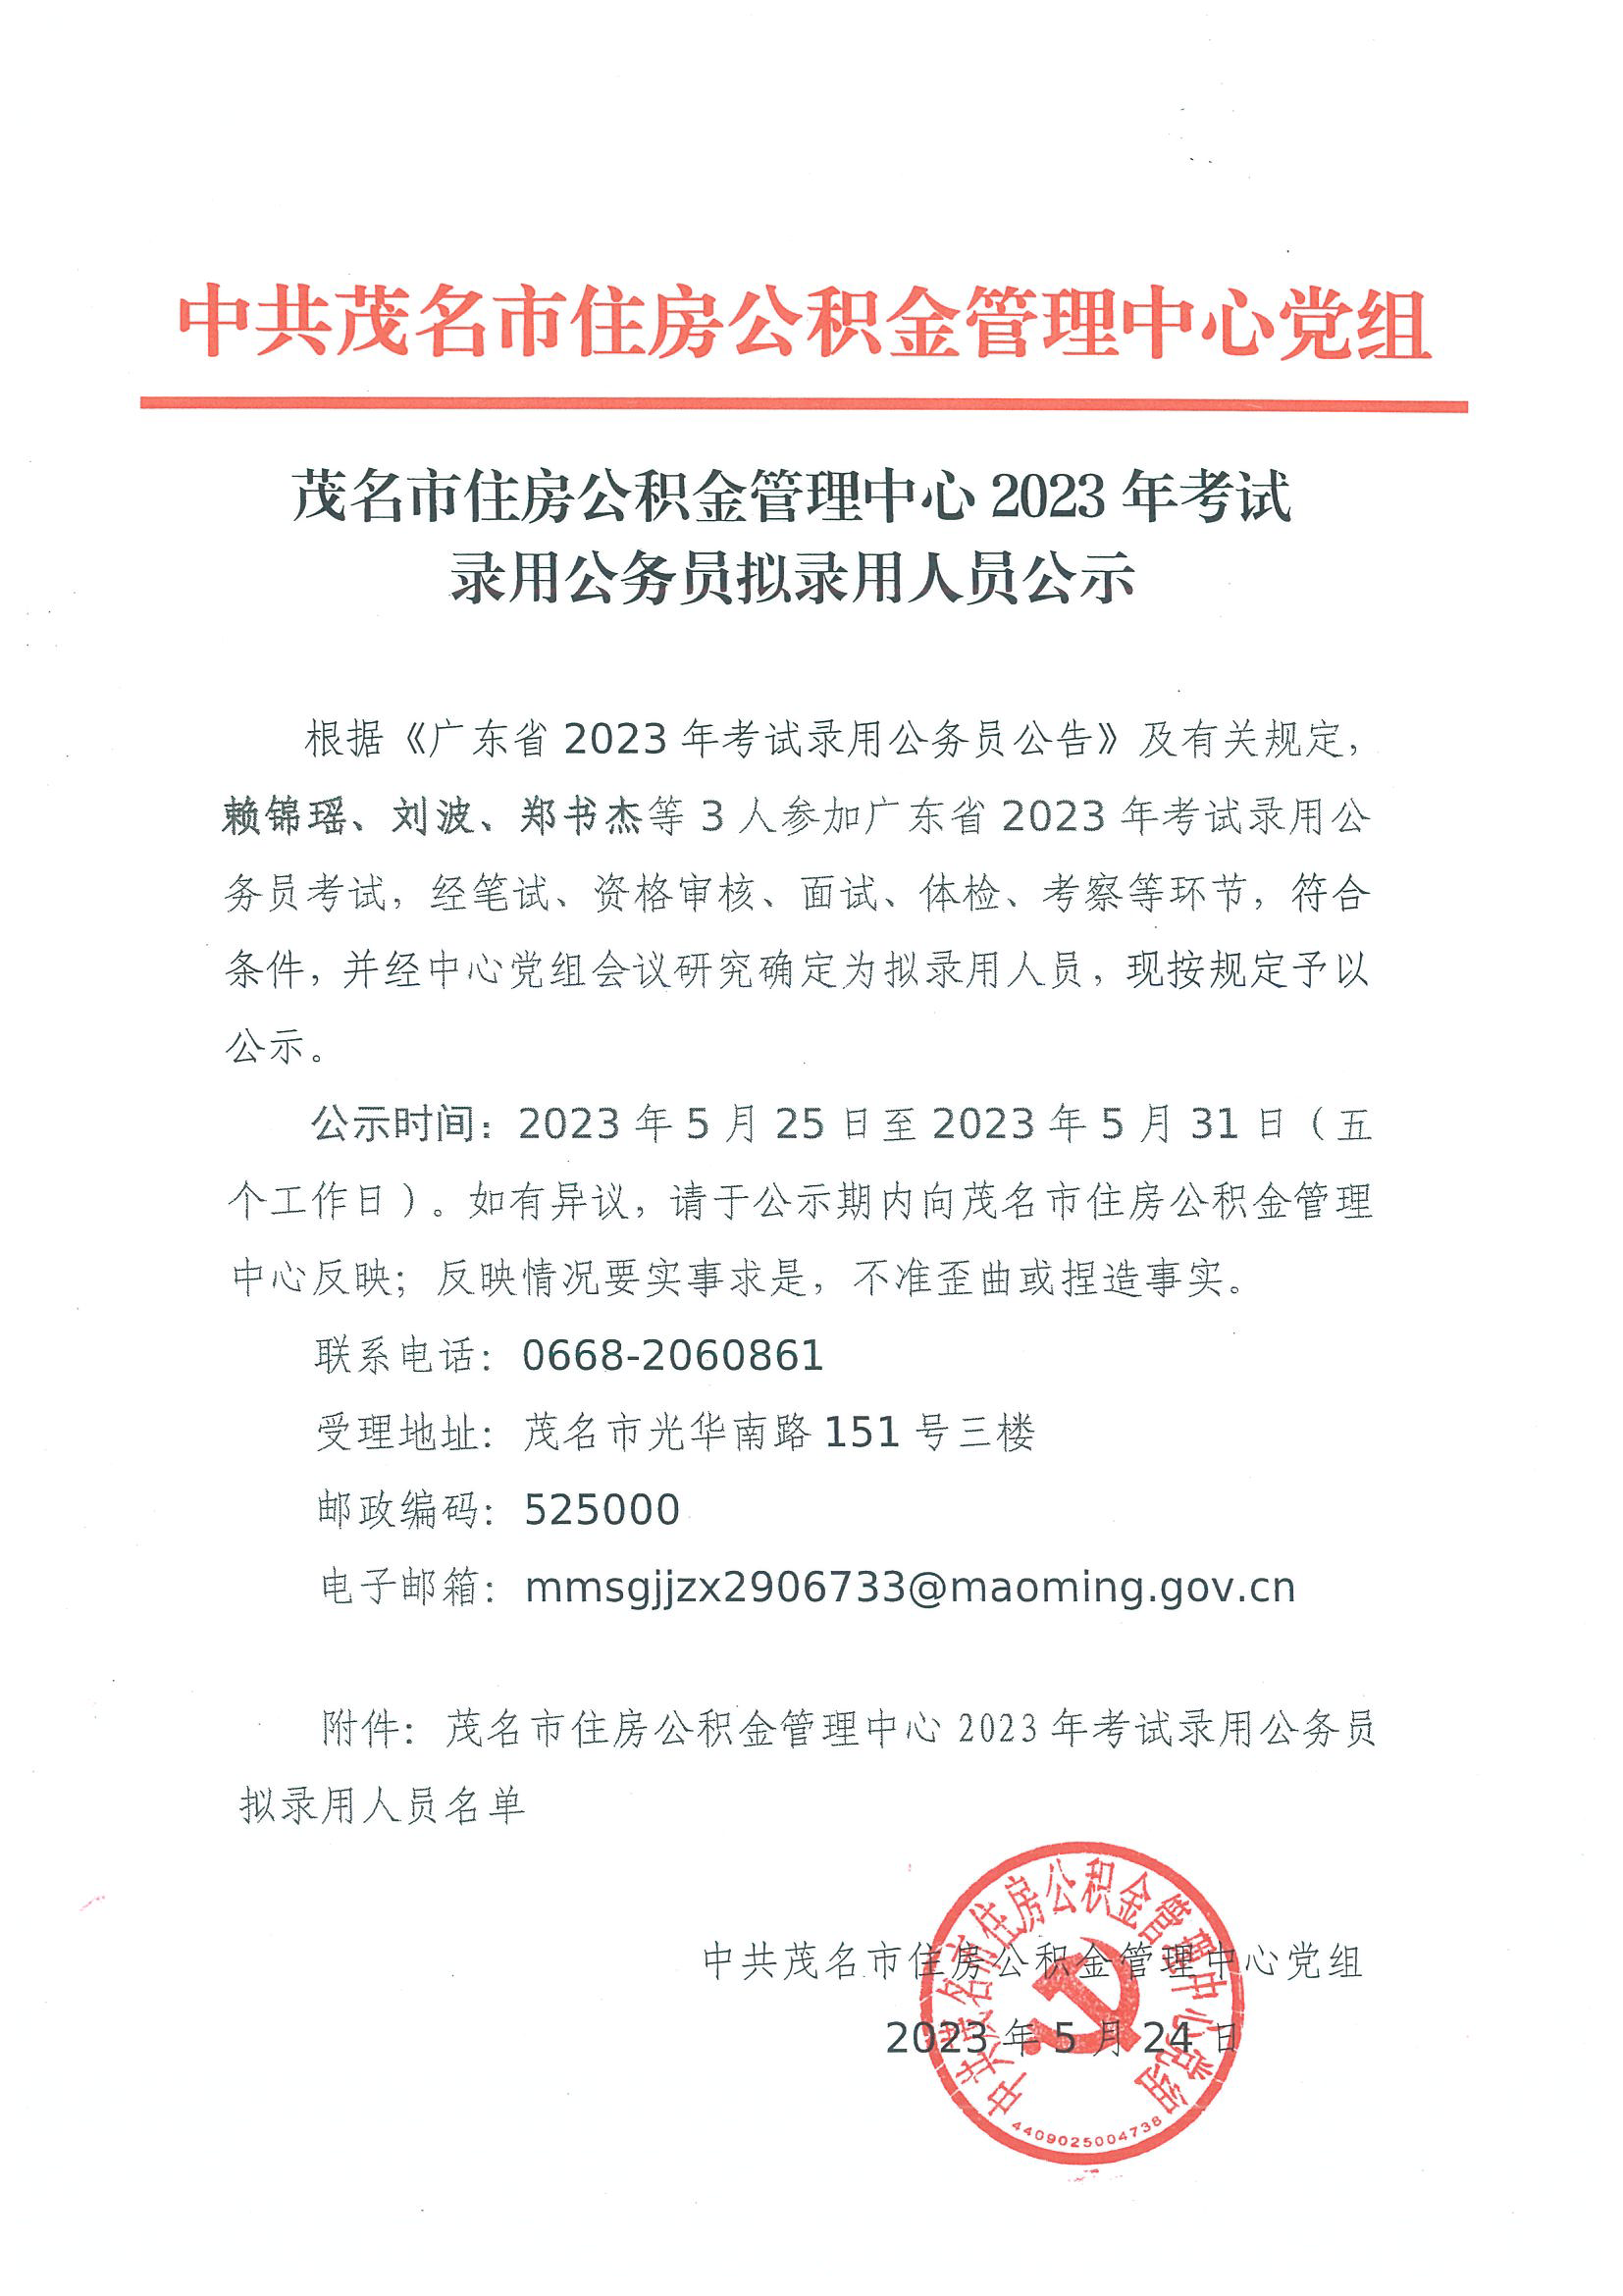 2023年考试录用公务员拟录用人员公示（赖锦瑶、刘波、郑书杰）.png